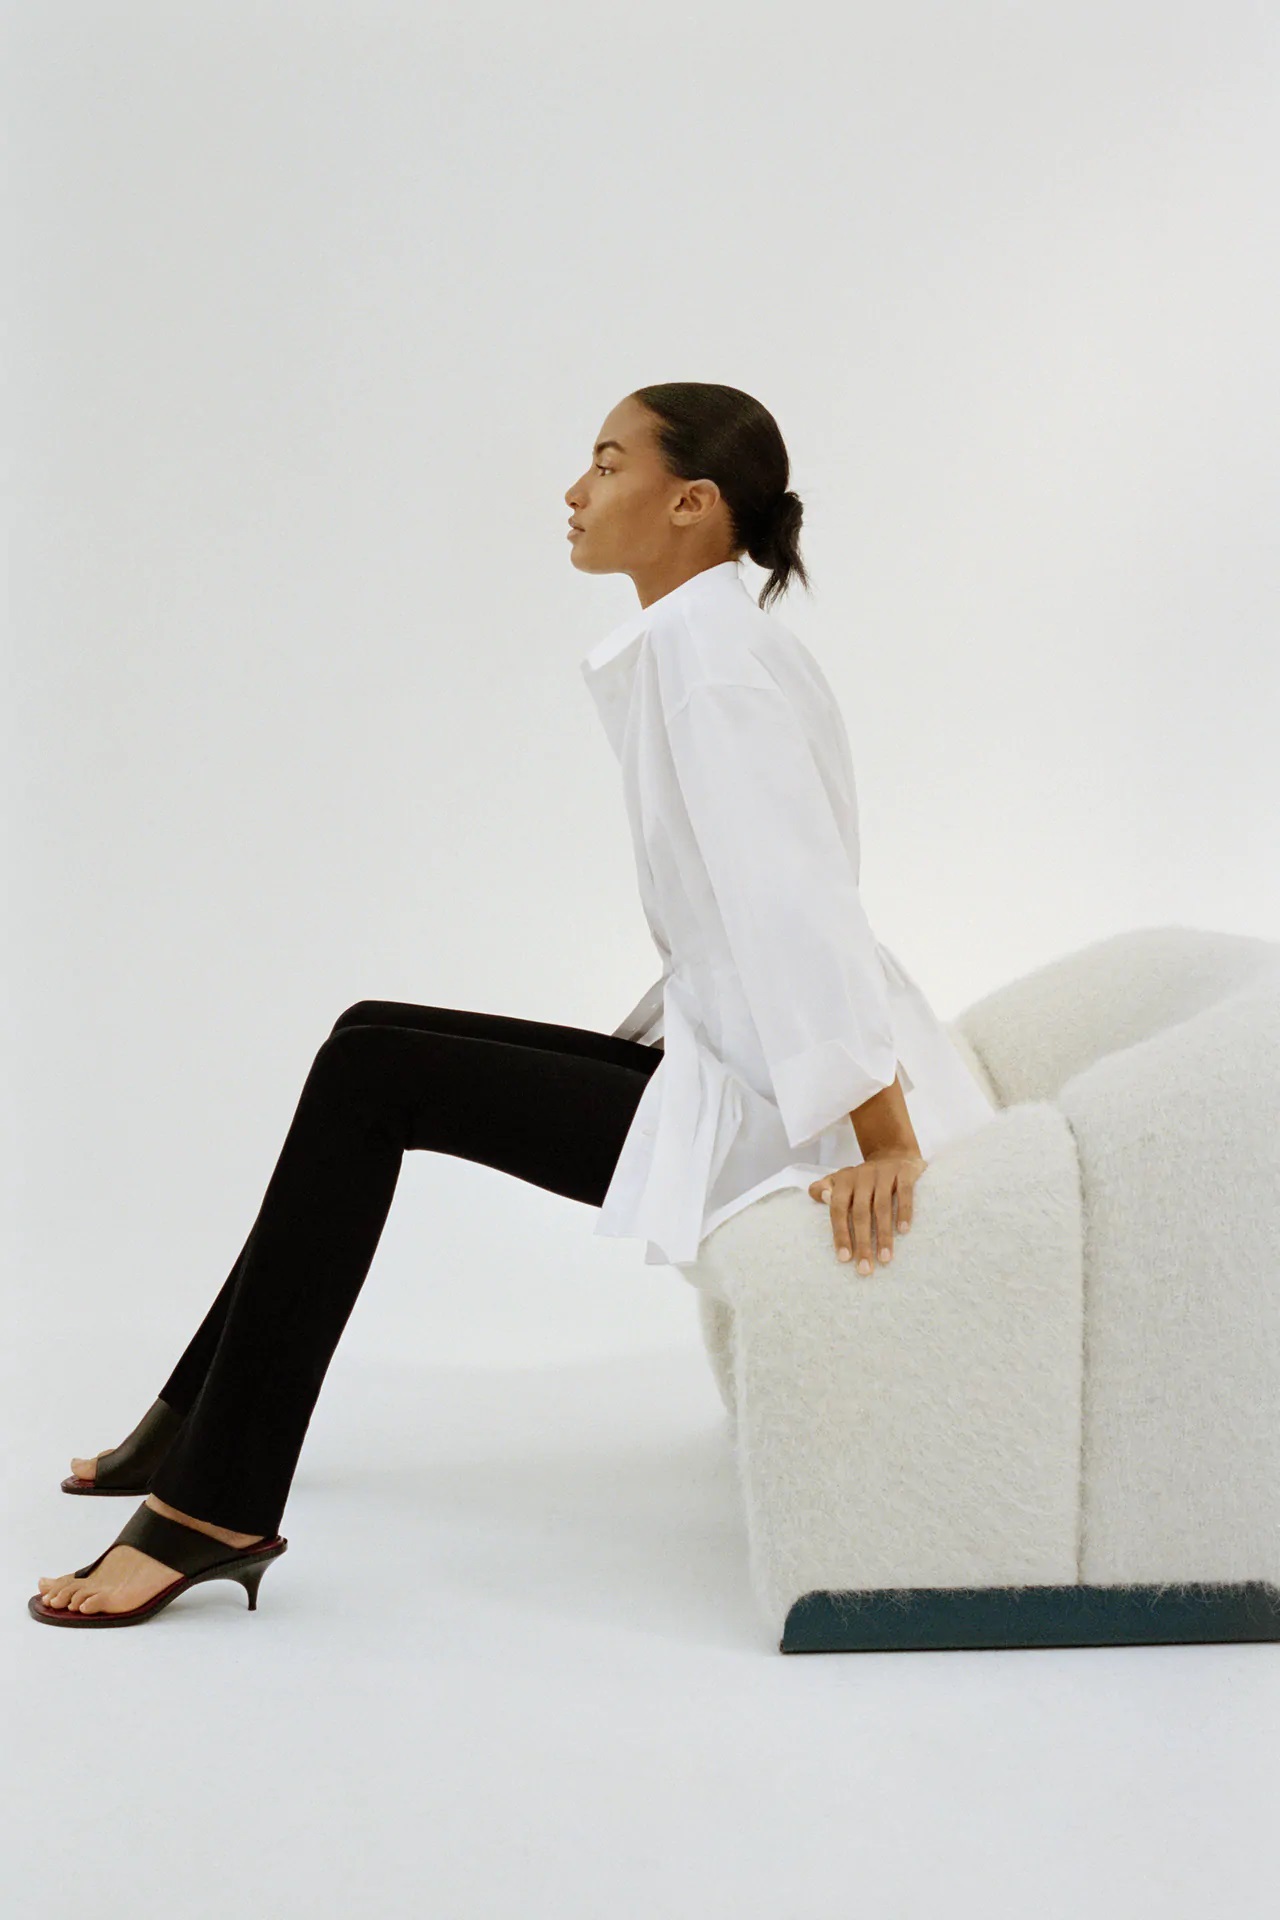 Estos son los leggins negros de Zara inspirados en la colección de Victoria Beckham 